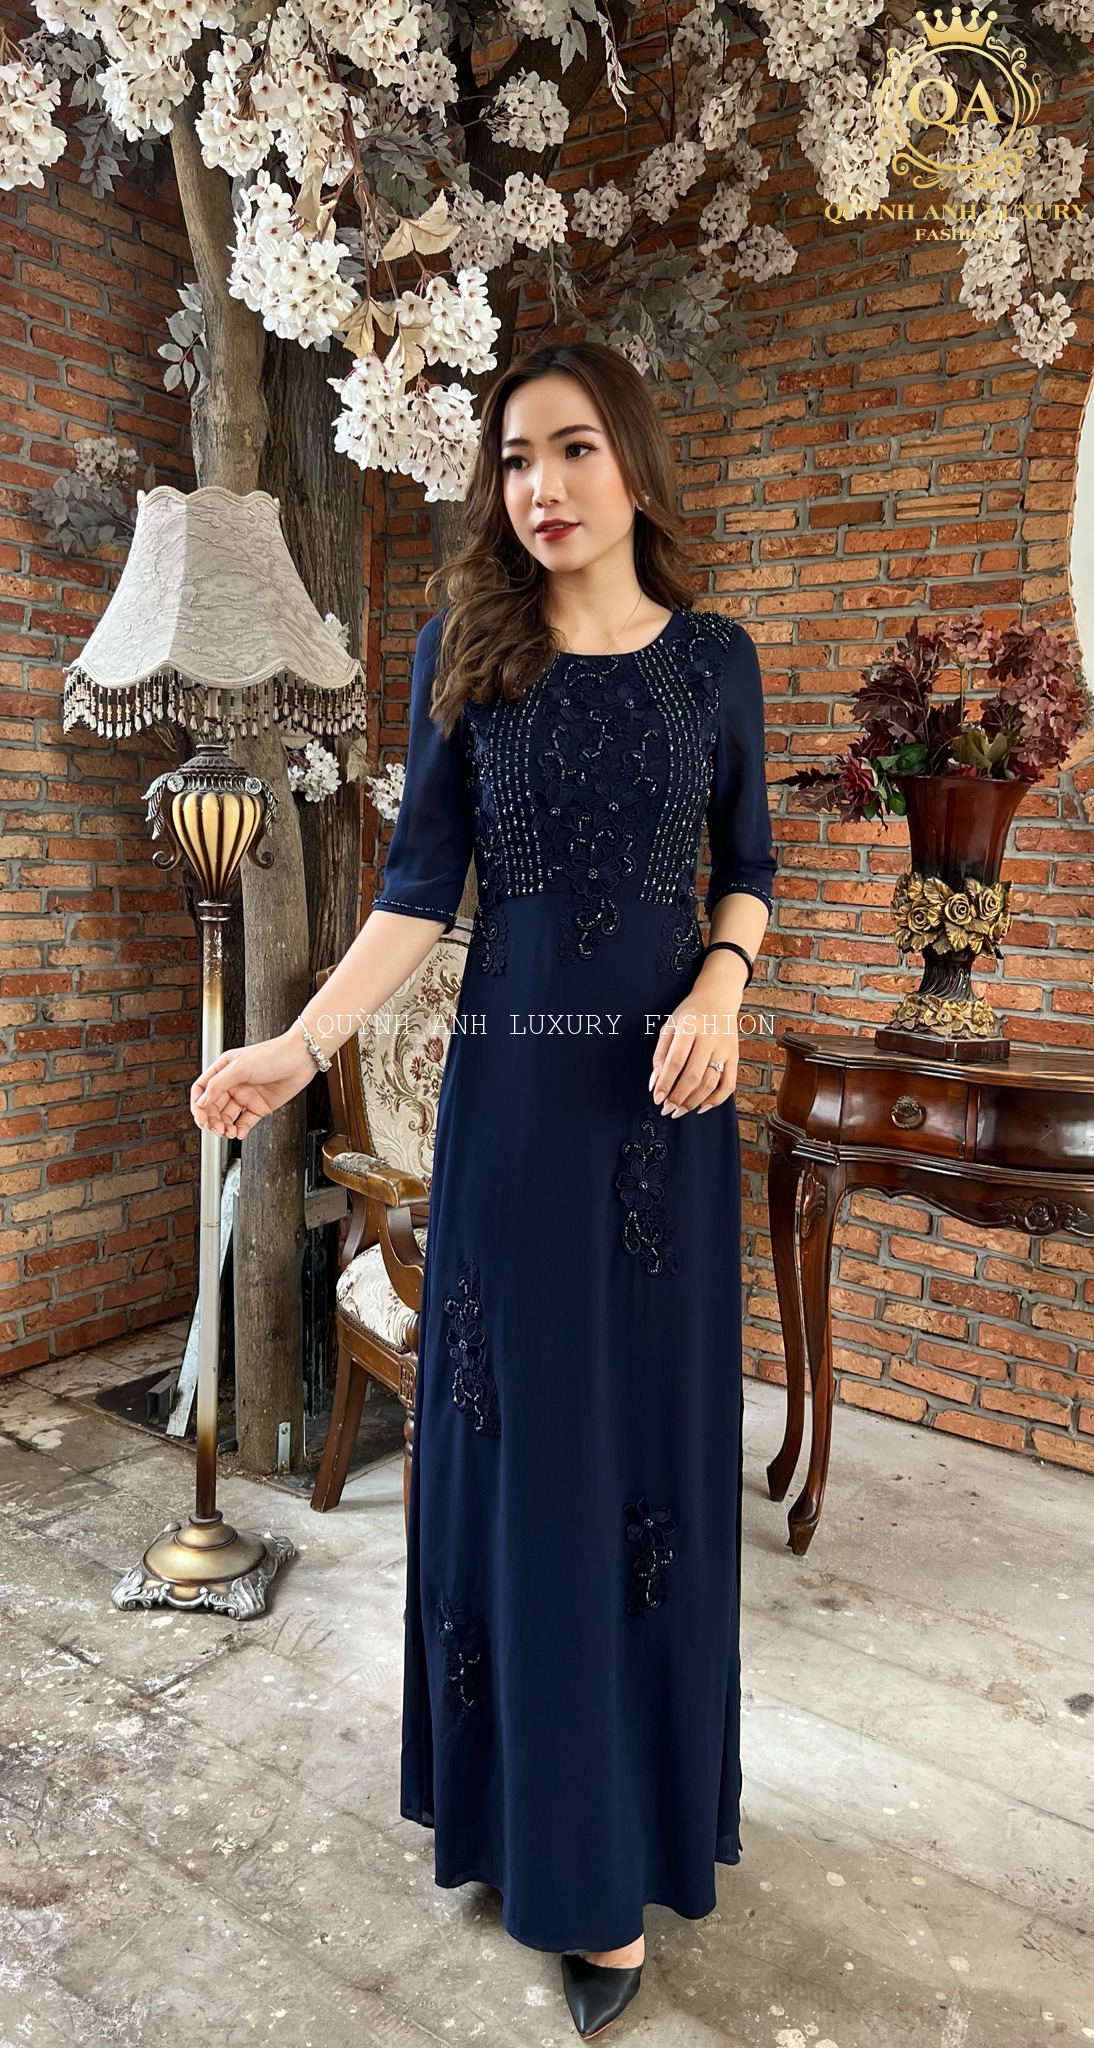 Chất lượng "miễn chê"  của áo dài bà sui của Quỳnh Anh Luxury Fashion